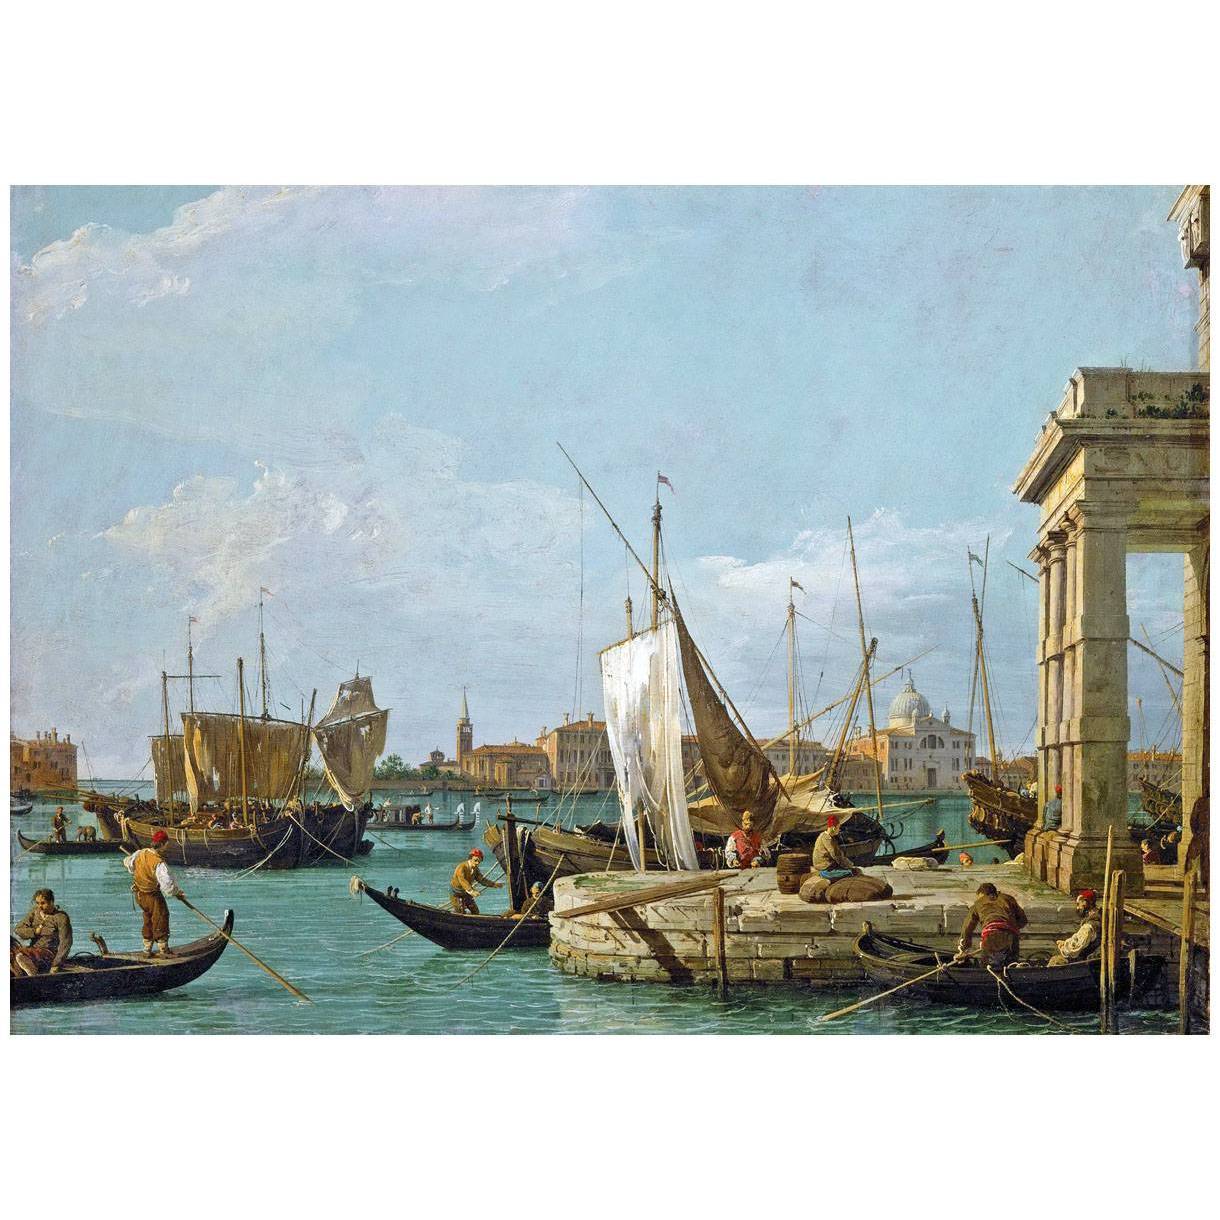 Canaletto. Dogana. 1724-1725. Kunsthistorisches Museum Wien